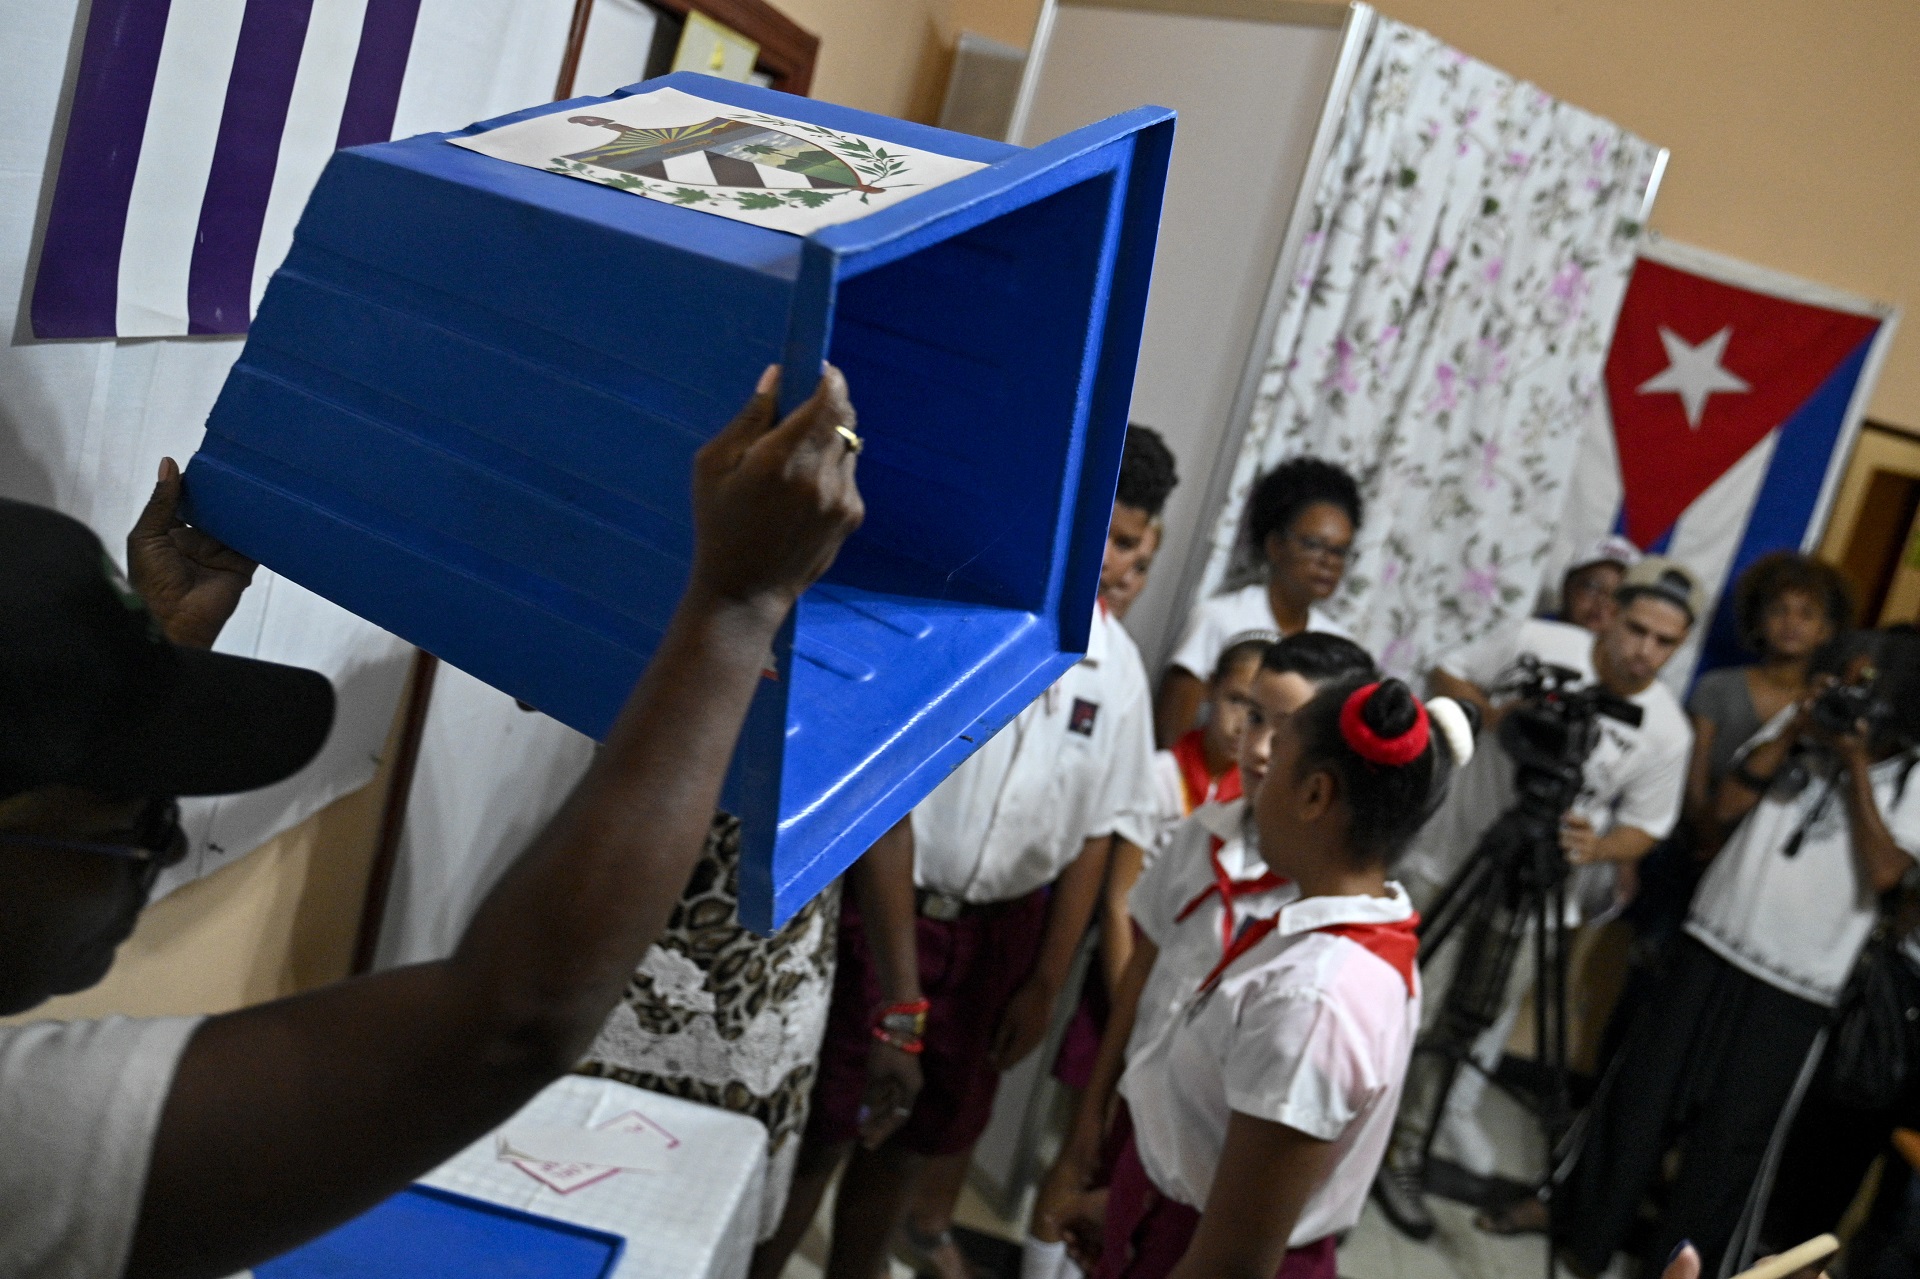 Observadores independentes de las elecciones convocadas por el régimen de Cuba calificaron el proceso como el más irregular desde 1976